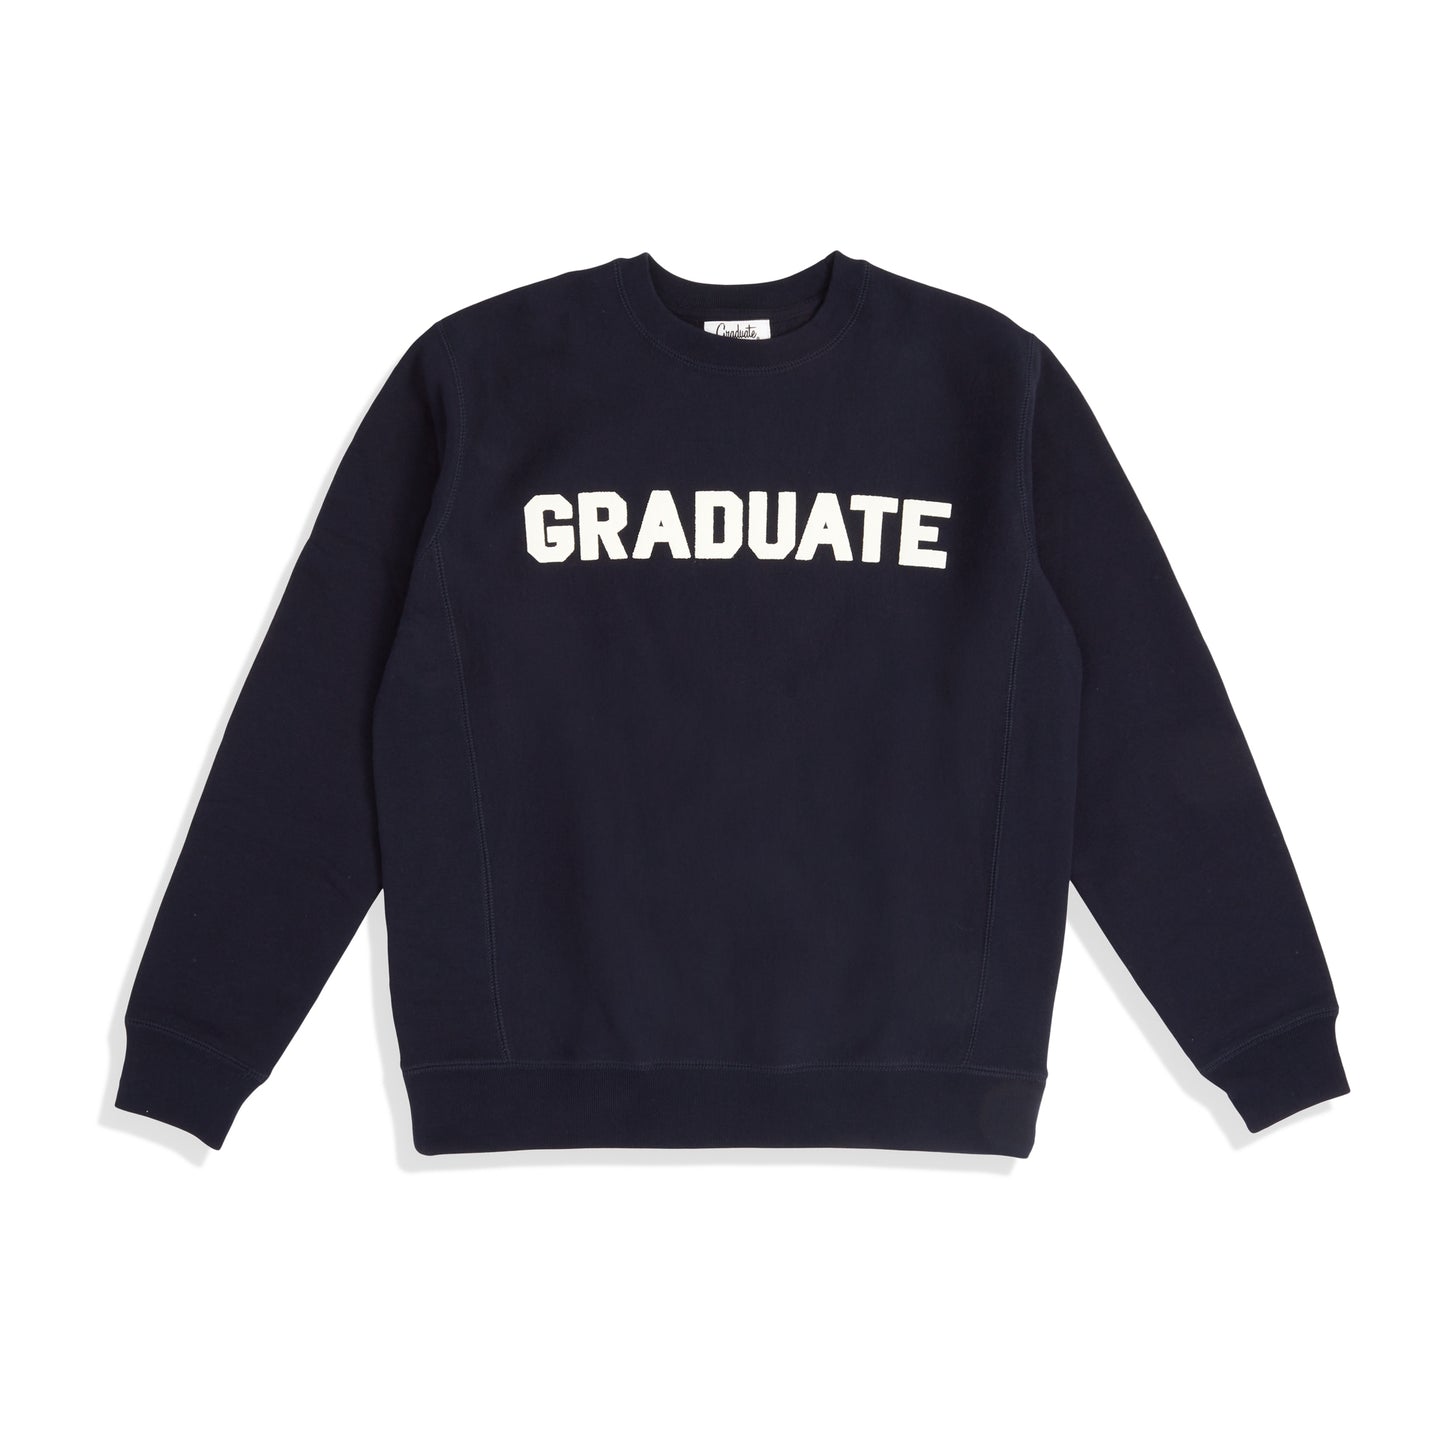 Collegiate Crewneck Sweatshirt - Navy